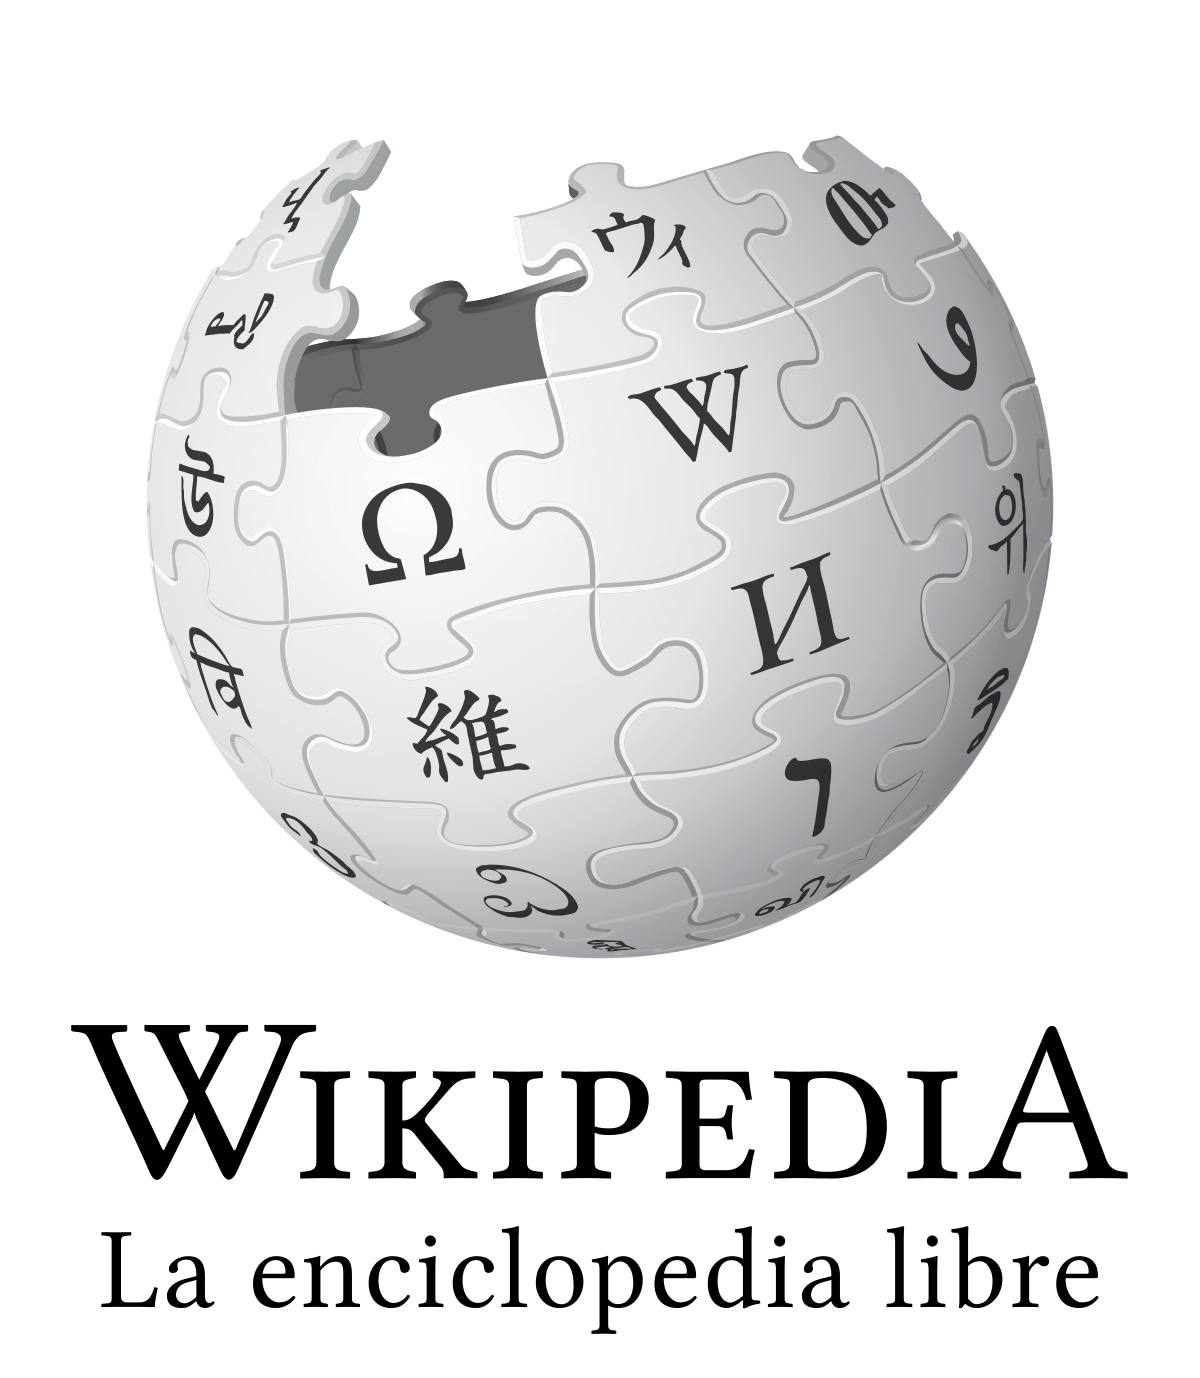 Freemium - Wikipedia